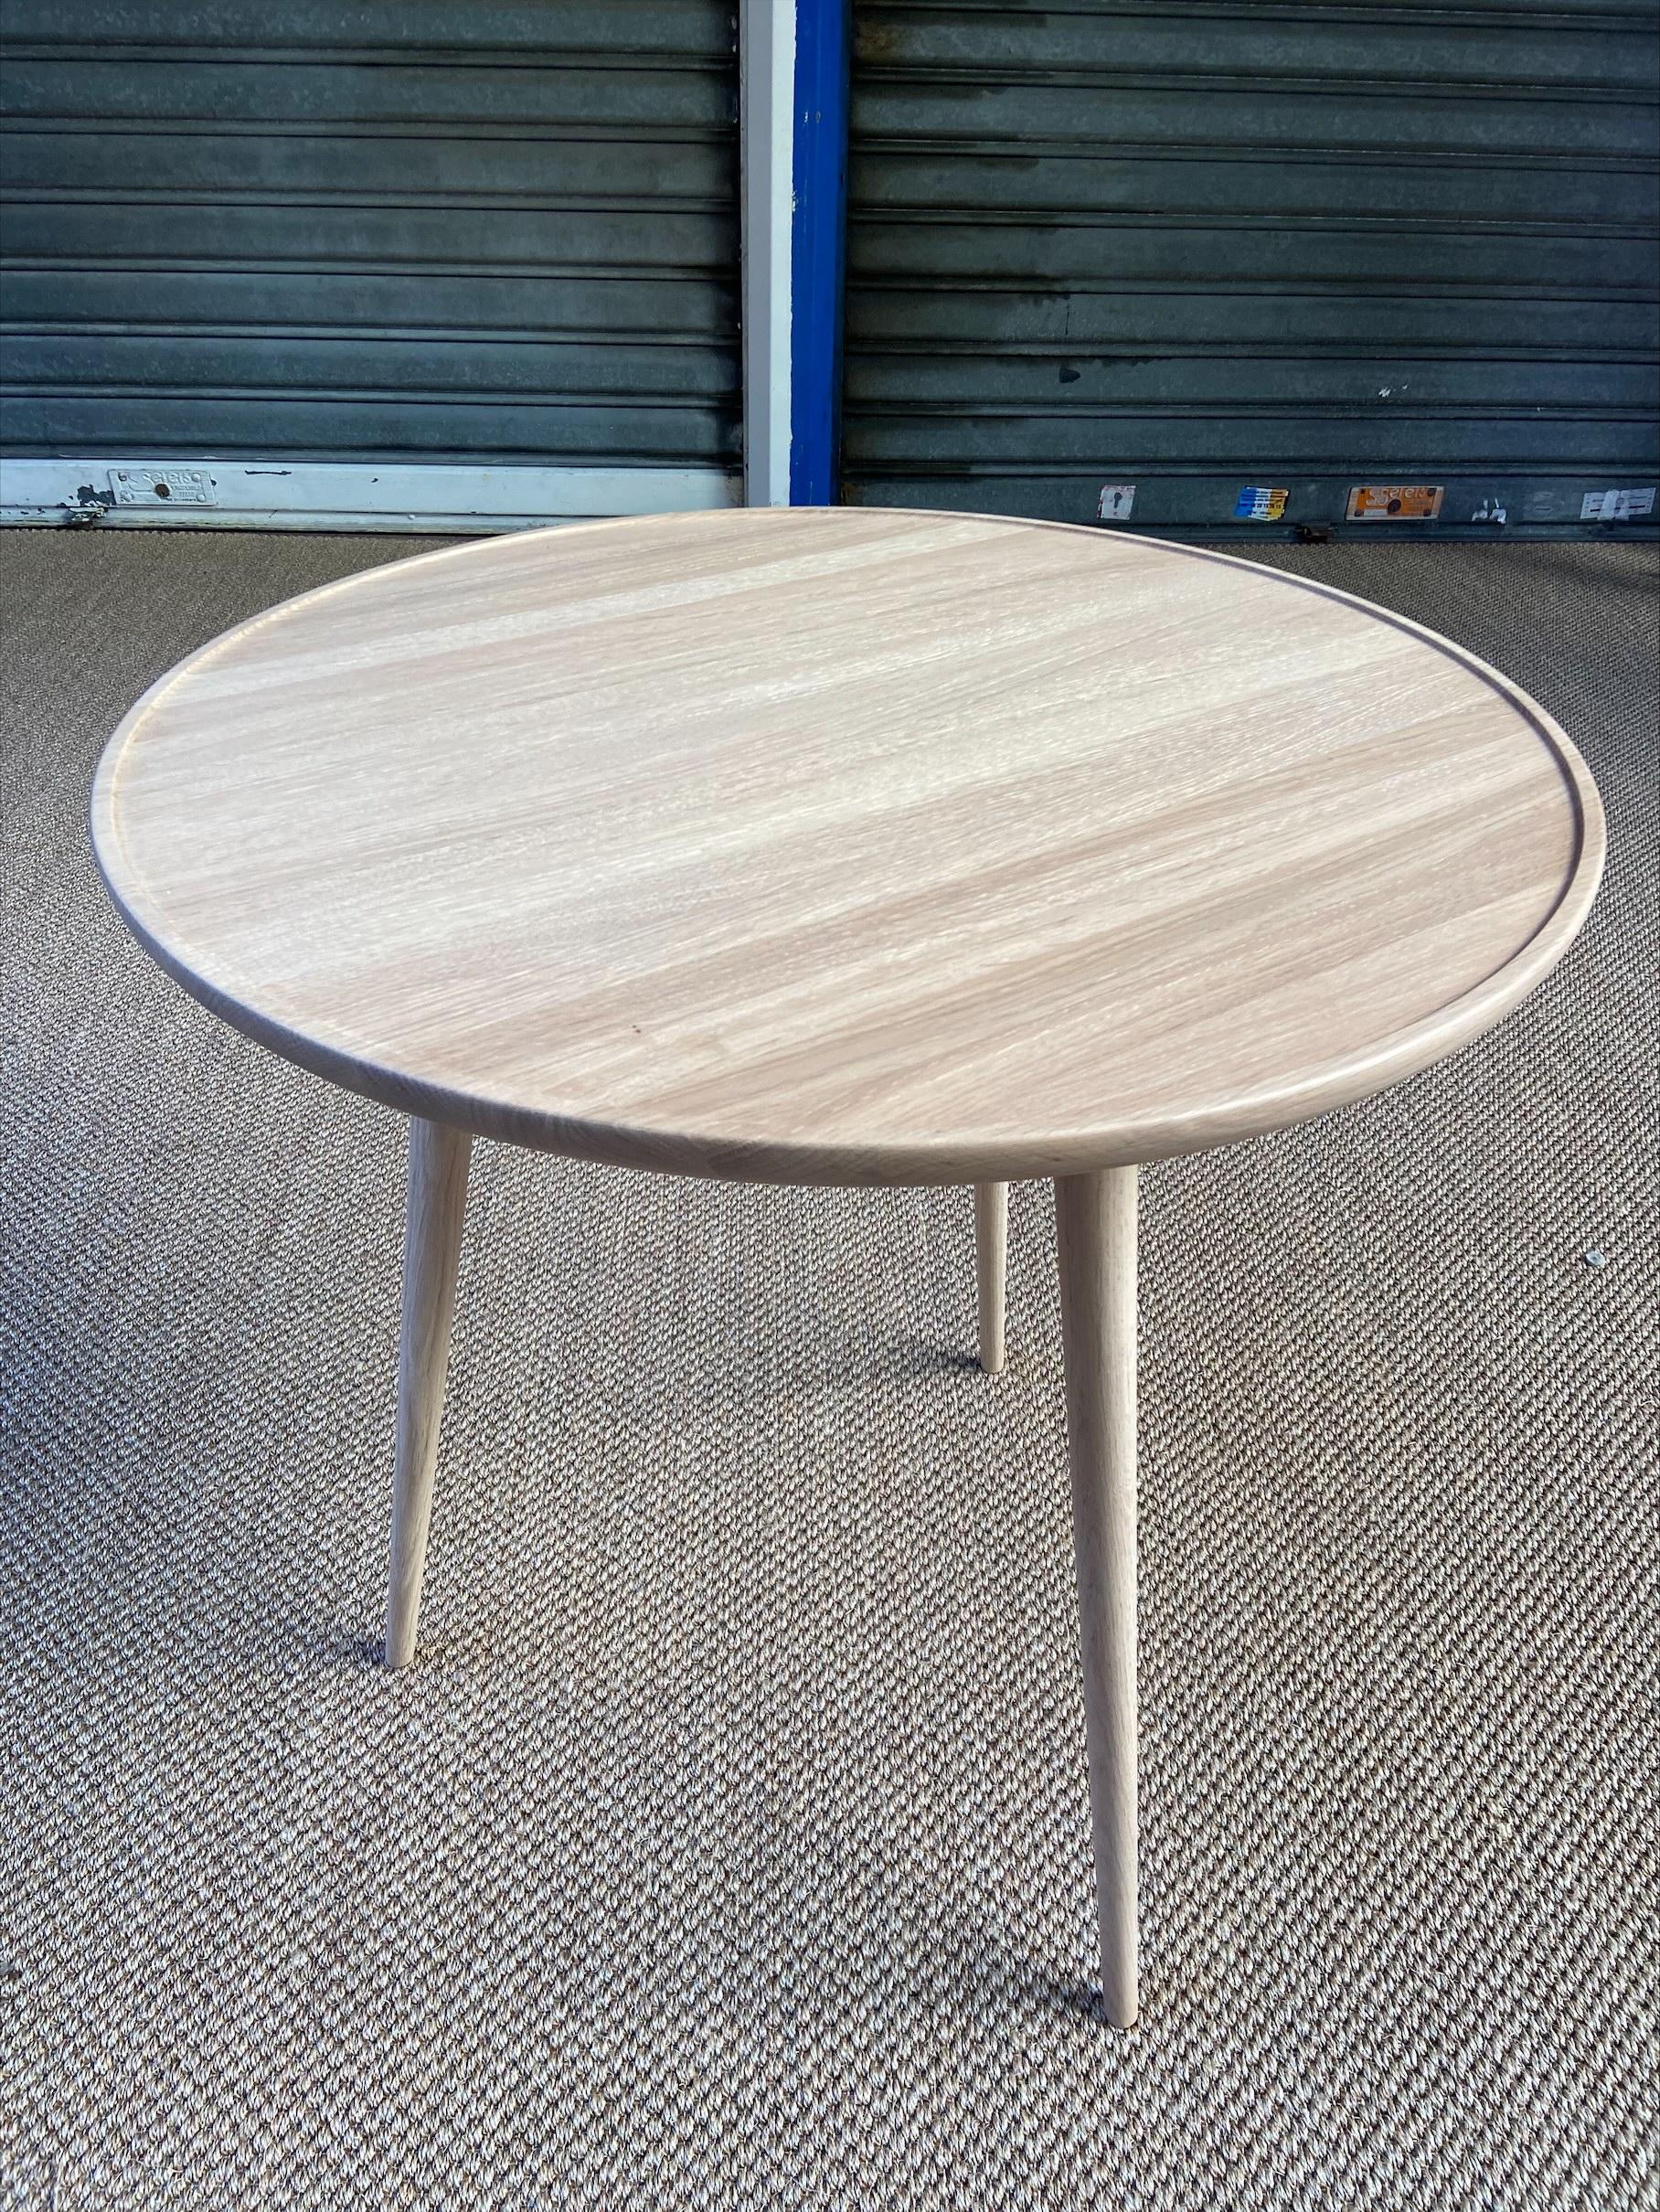 Side table - Space Copenhagen
Mater design edition
Oak
2020
Measures: H 73 x D 70.